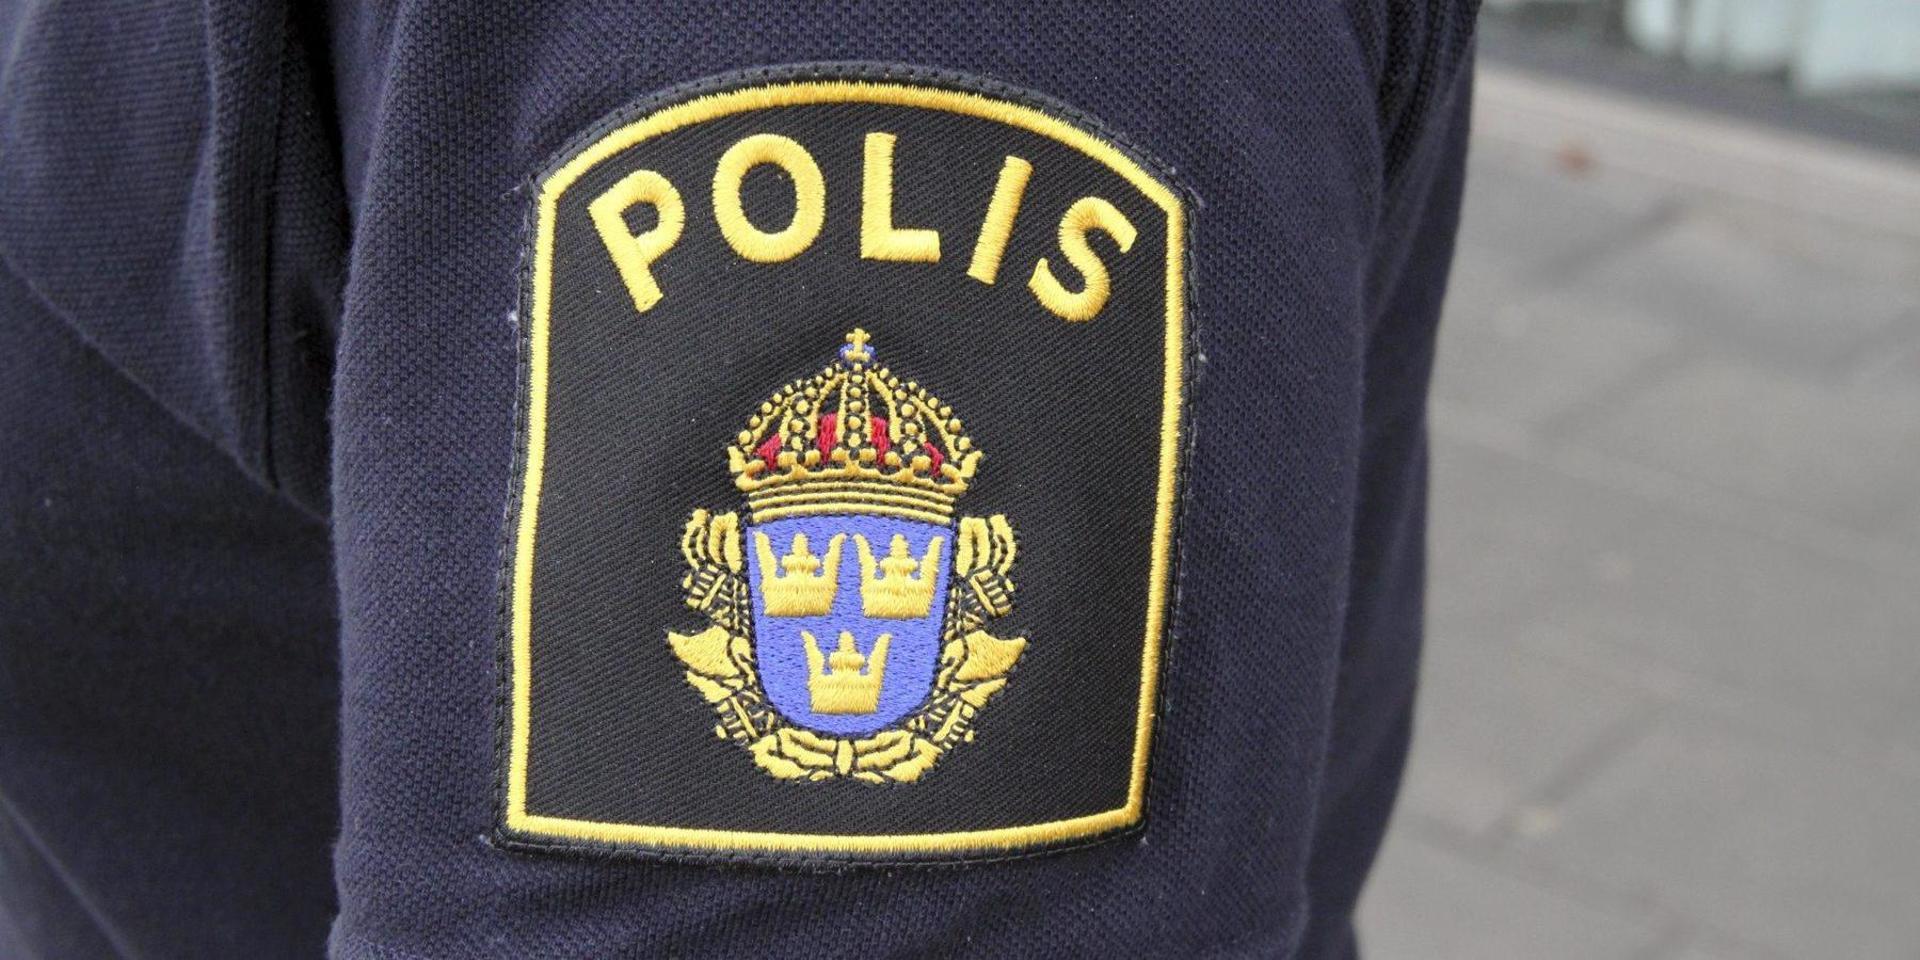 Vägföreningen Gårda Brygga har utsatts för ett misstänkt bedrägeriförsök.